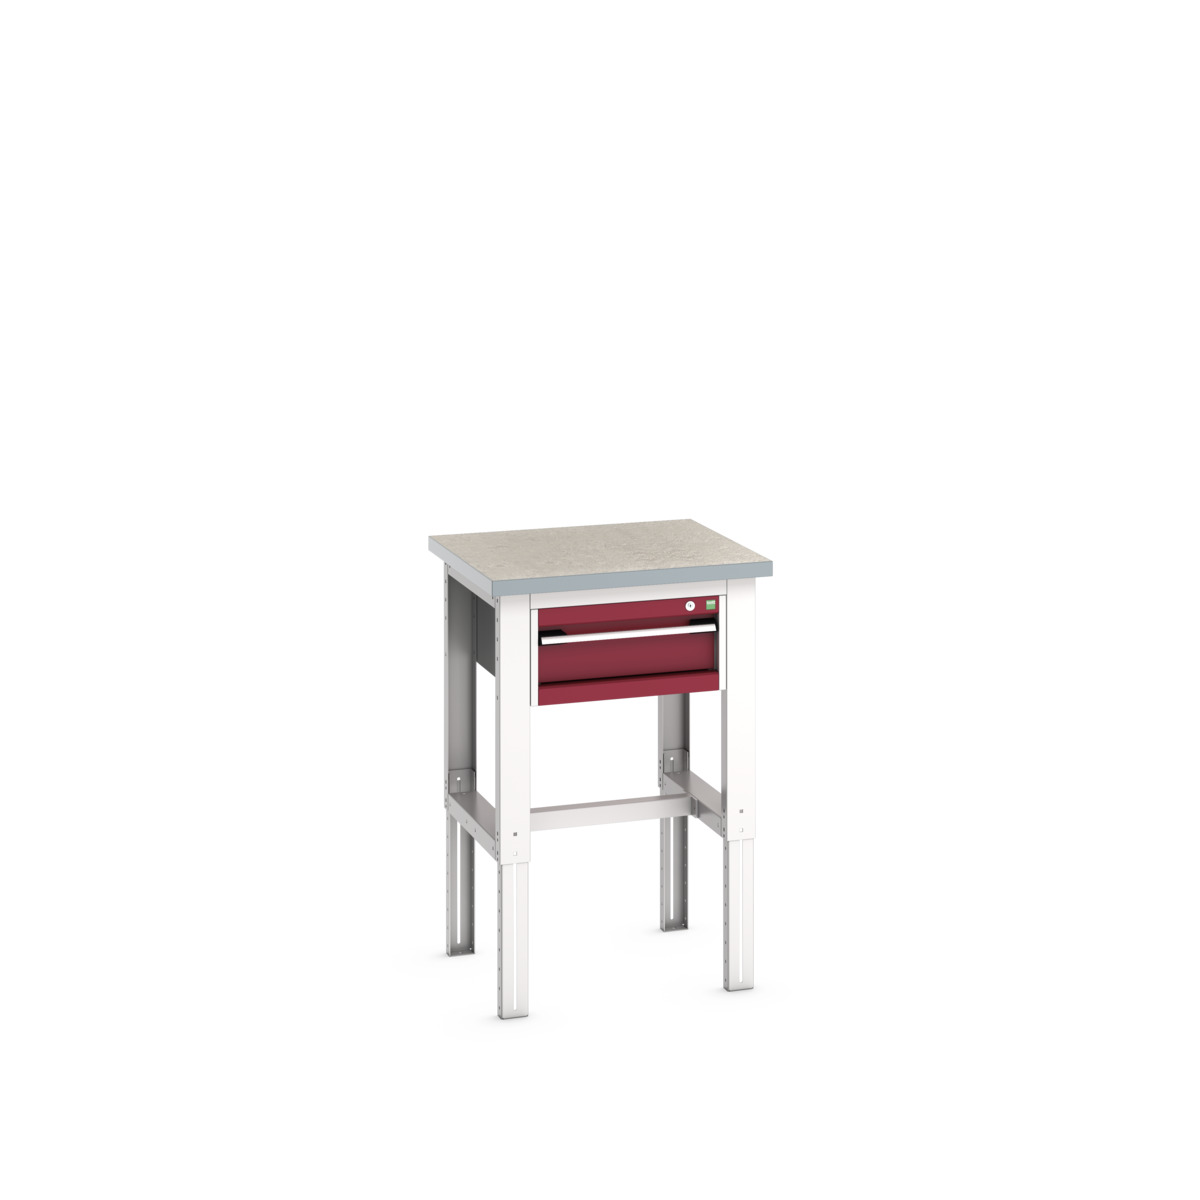 41003532.24V - cubio framework bench (lino)